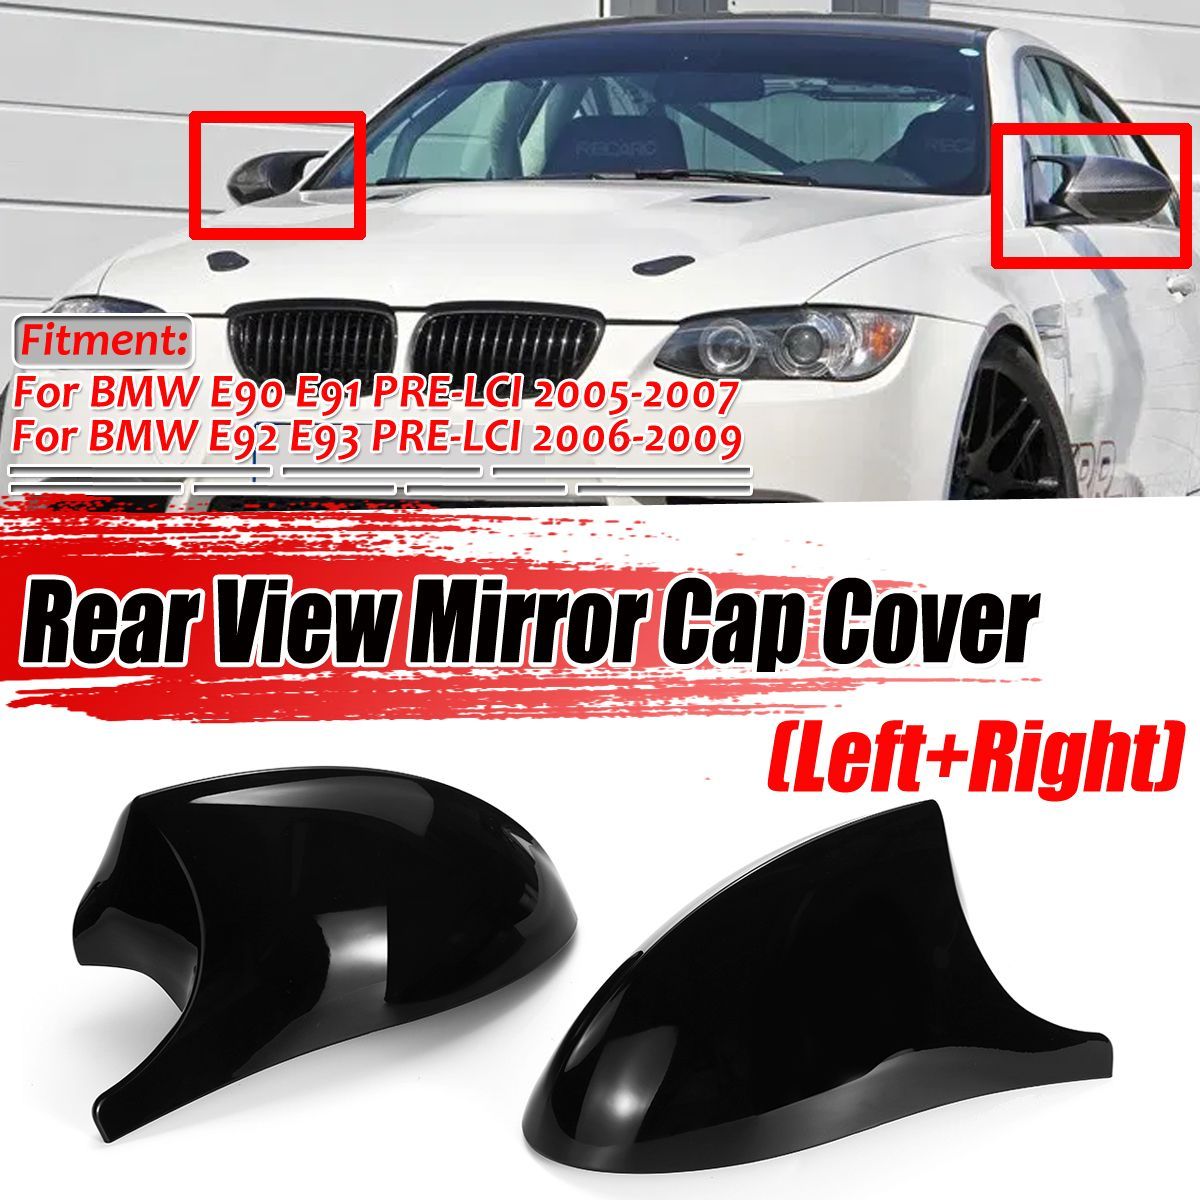 Car-Rear-View-Mirror-Cap-Cover-Replacement-Glossy-Black-Left--Right-for-BMW-E90-E91-2005-2007-E92-E9-1586191